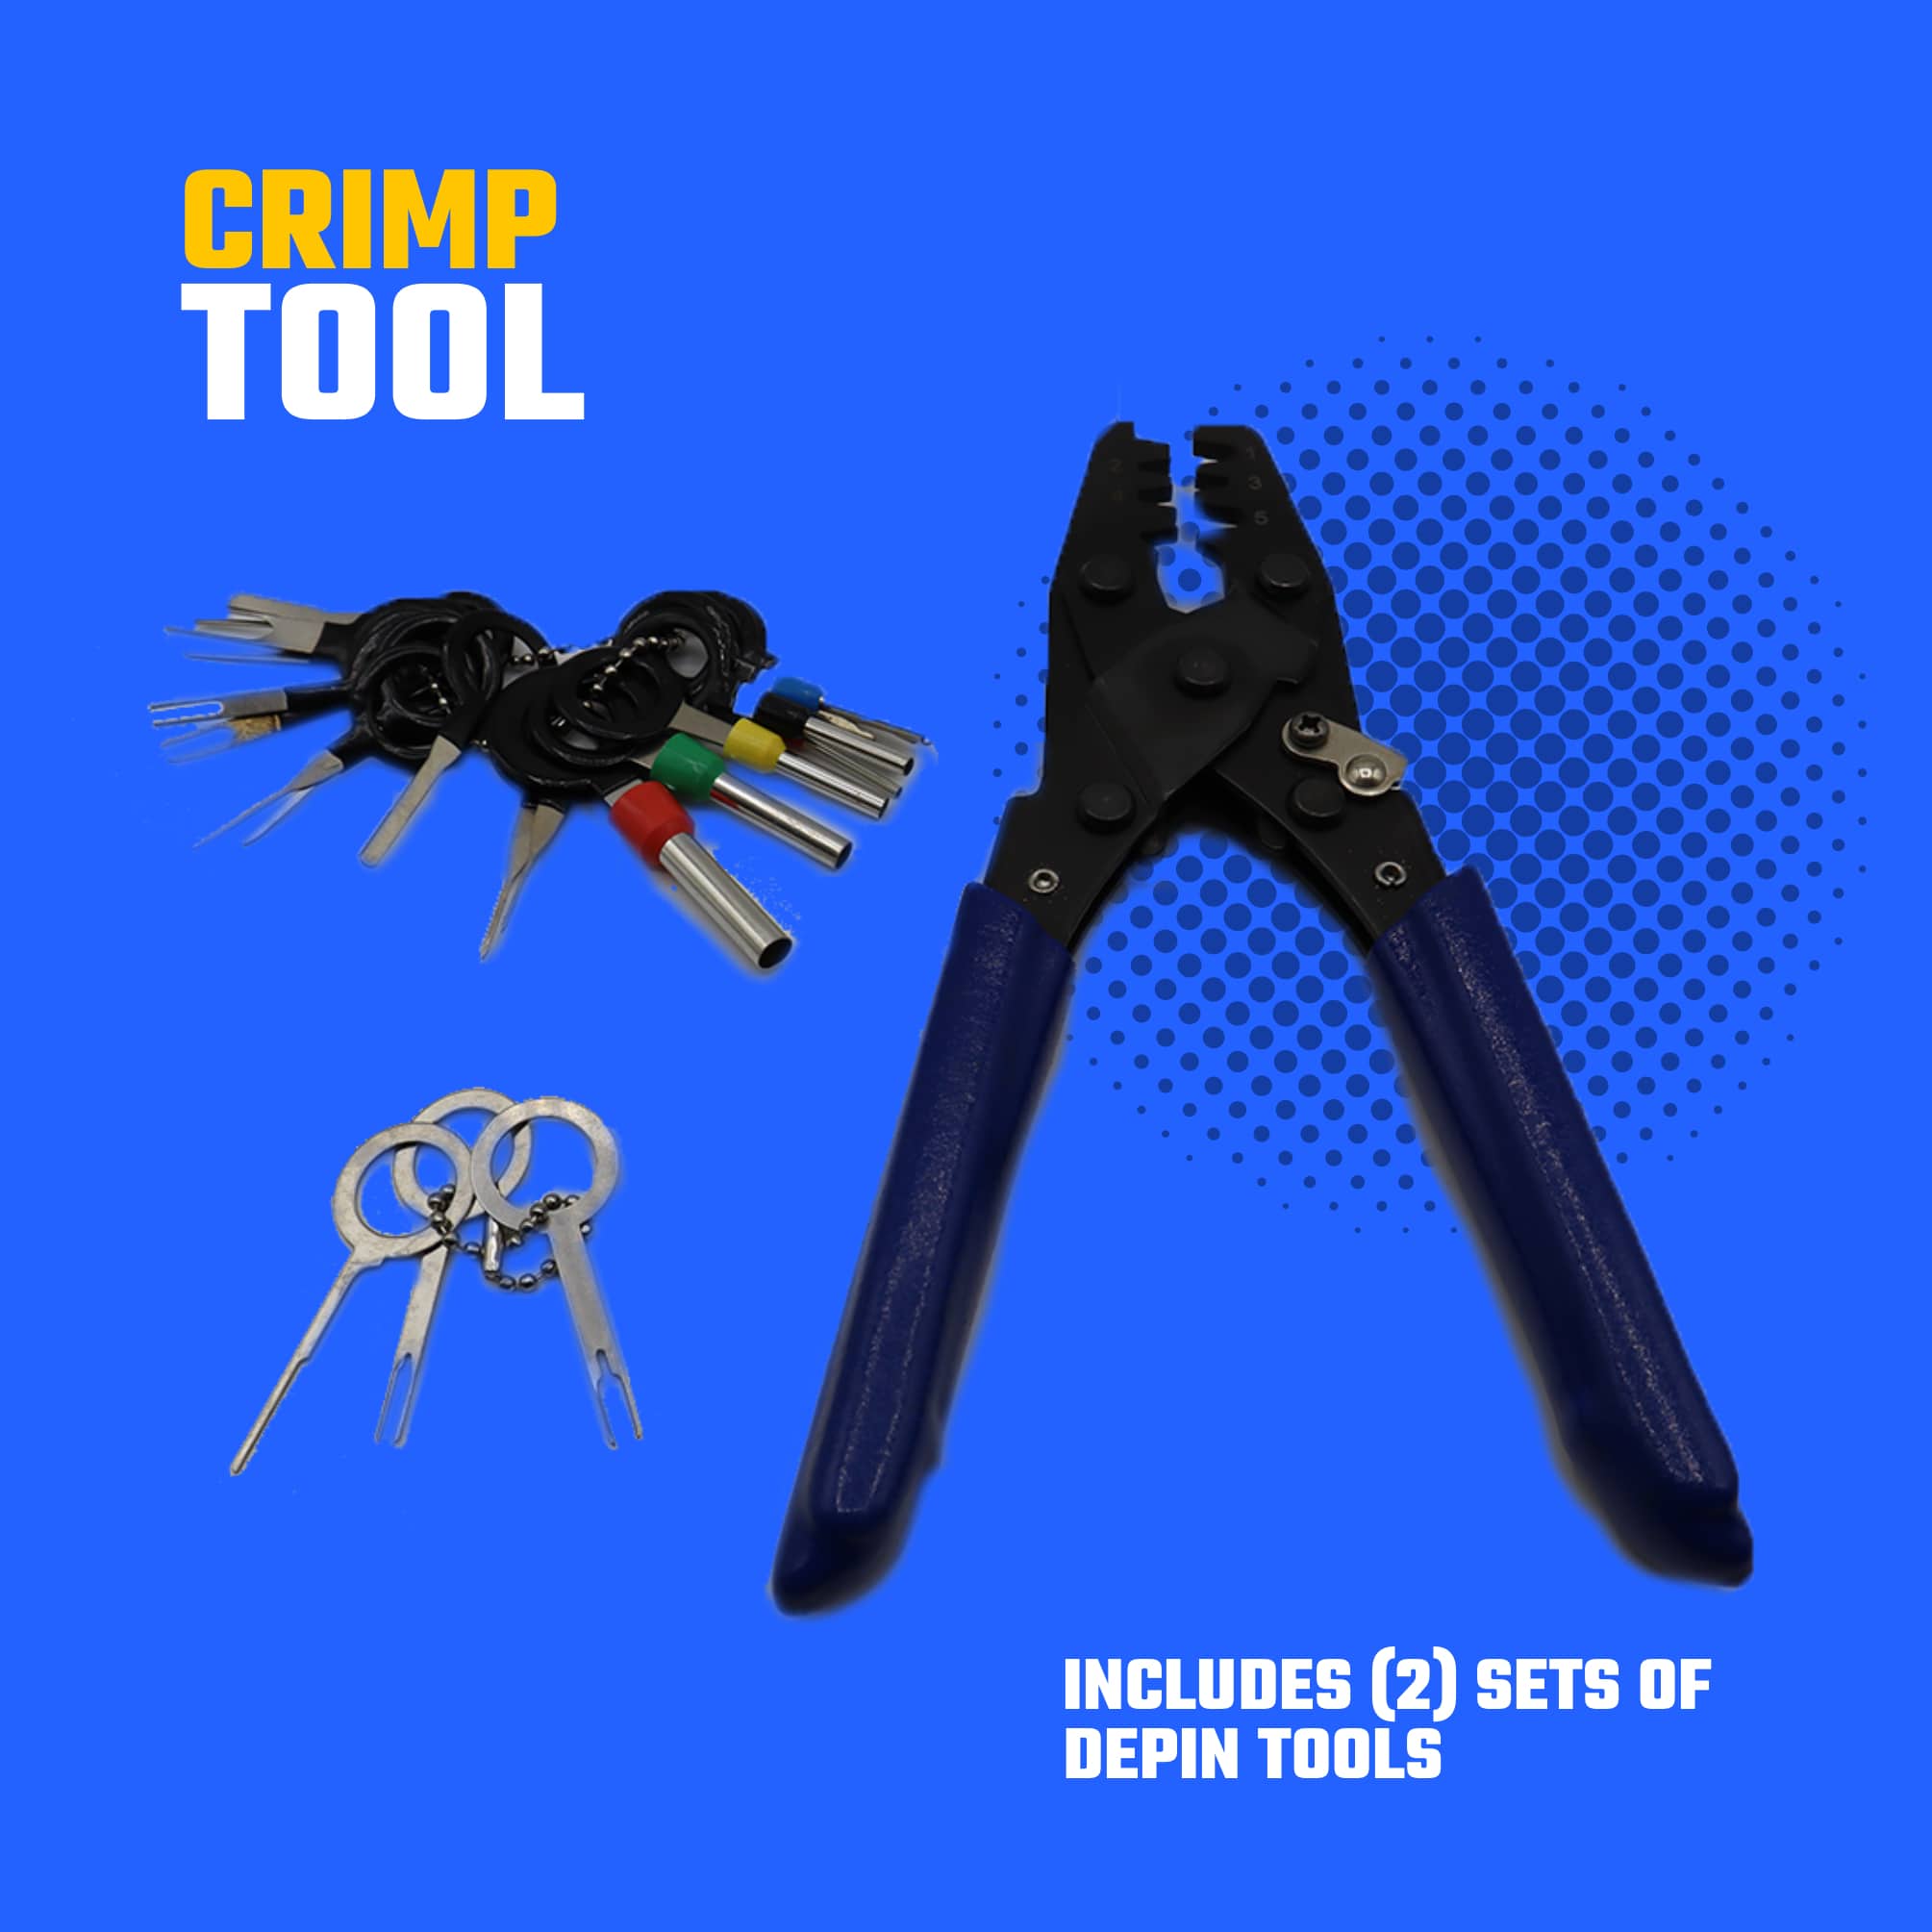 Crimp Tool